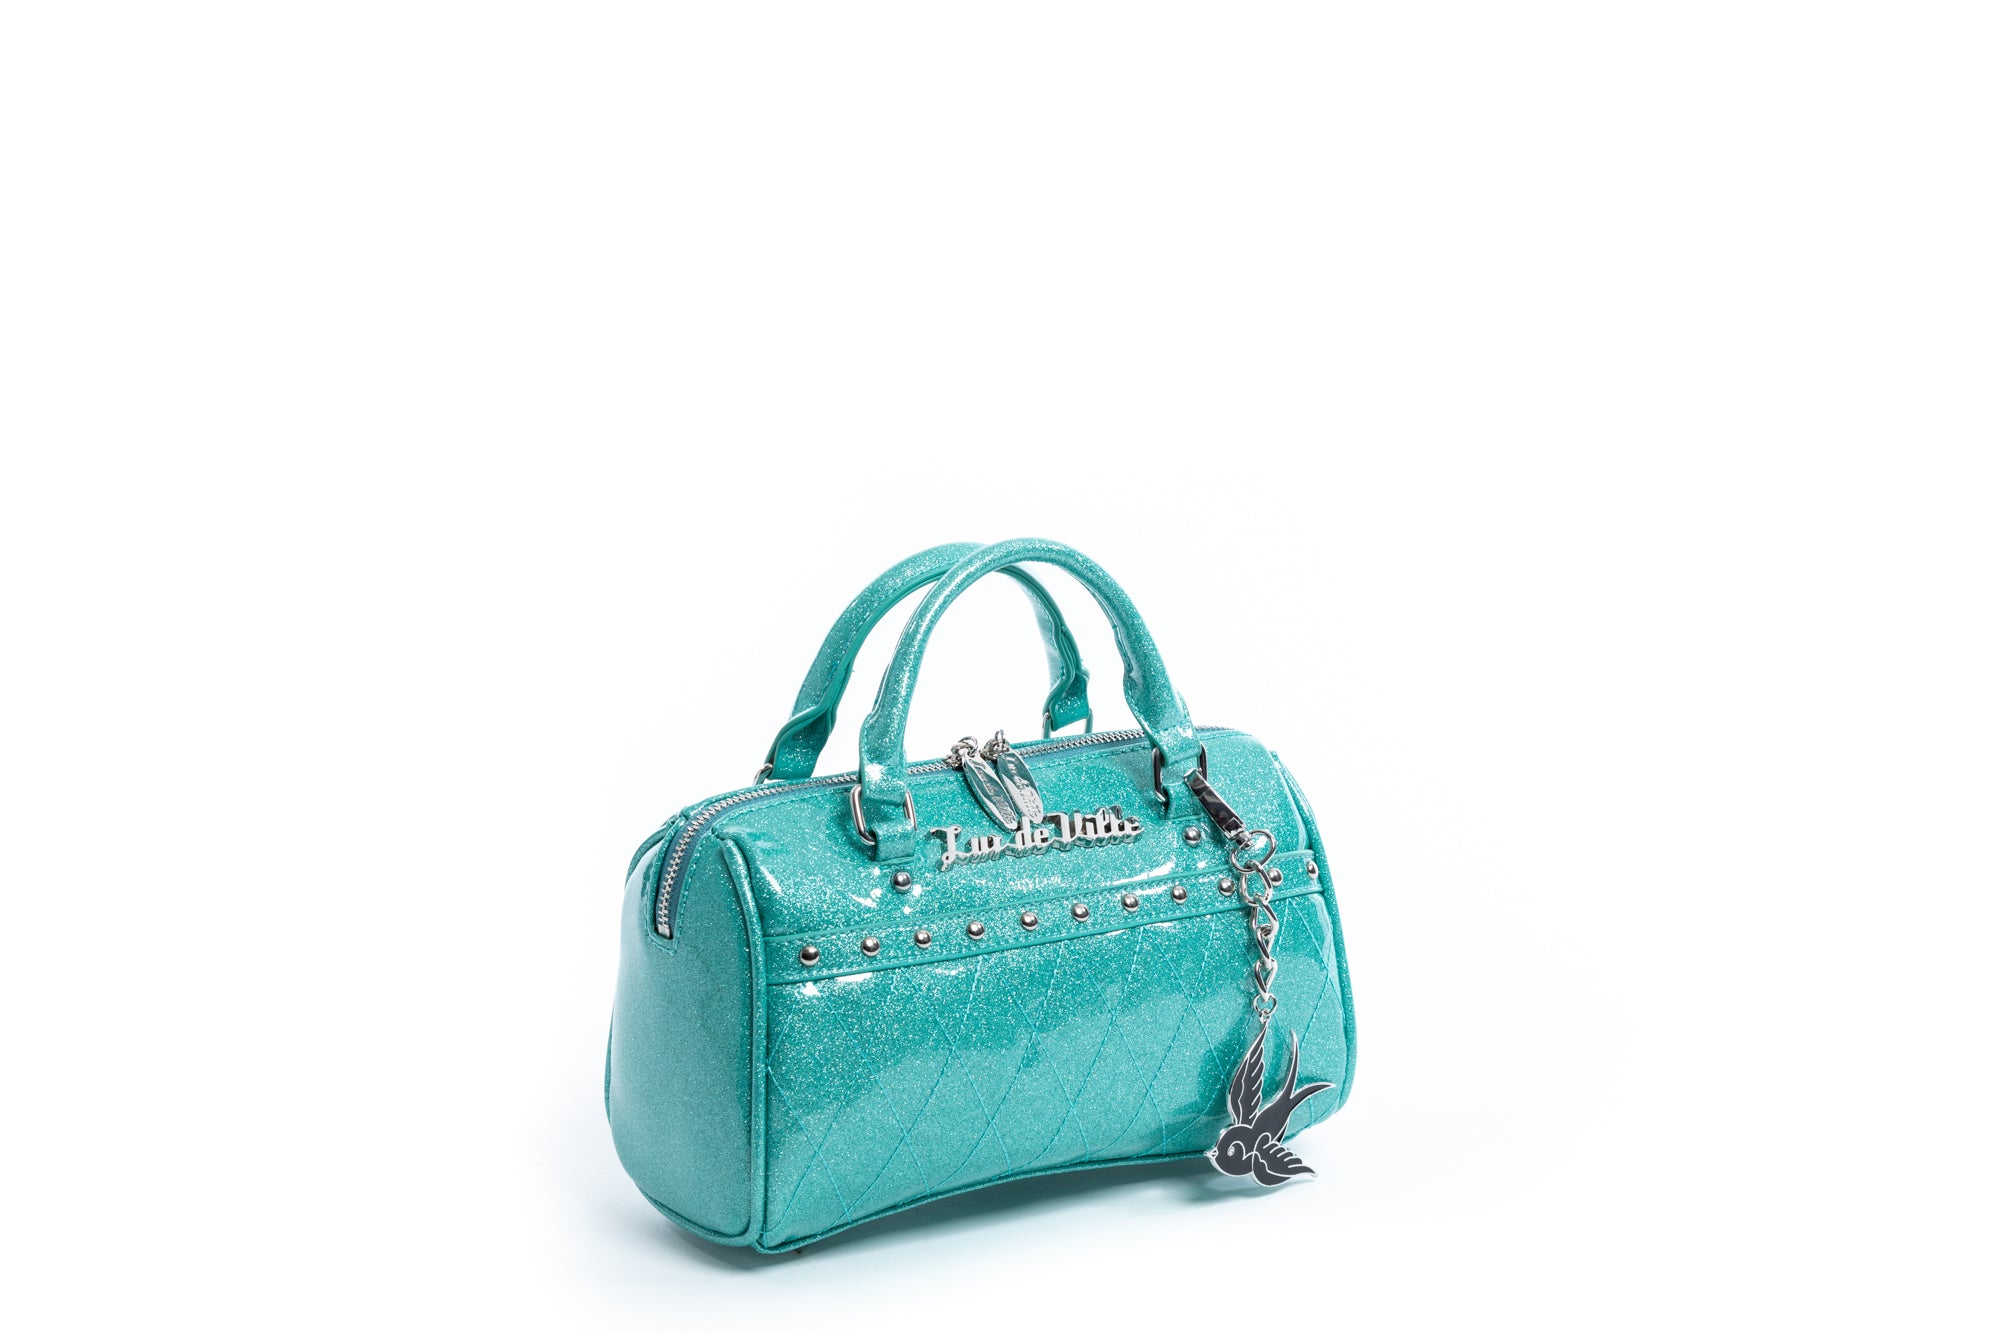 Handbags – Lux de Ville